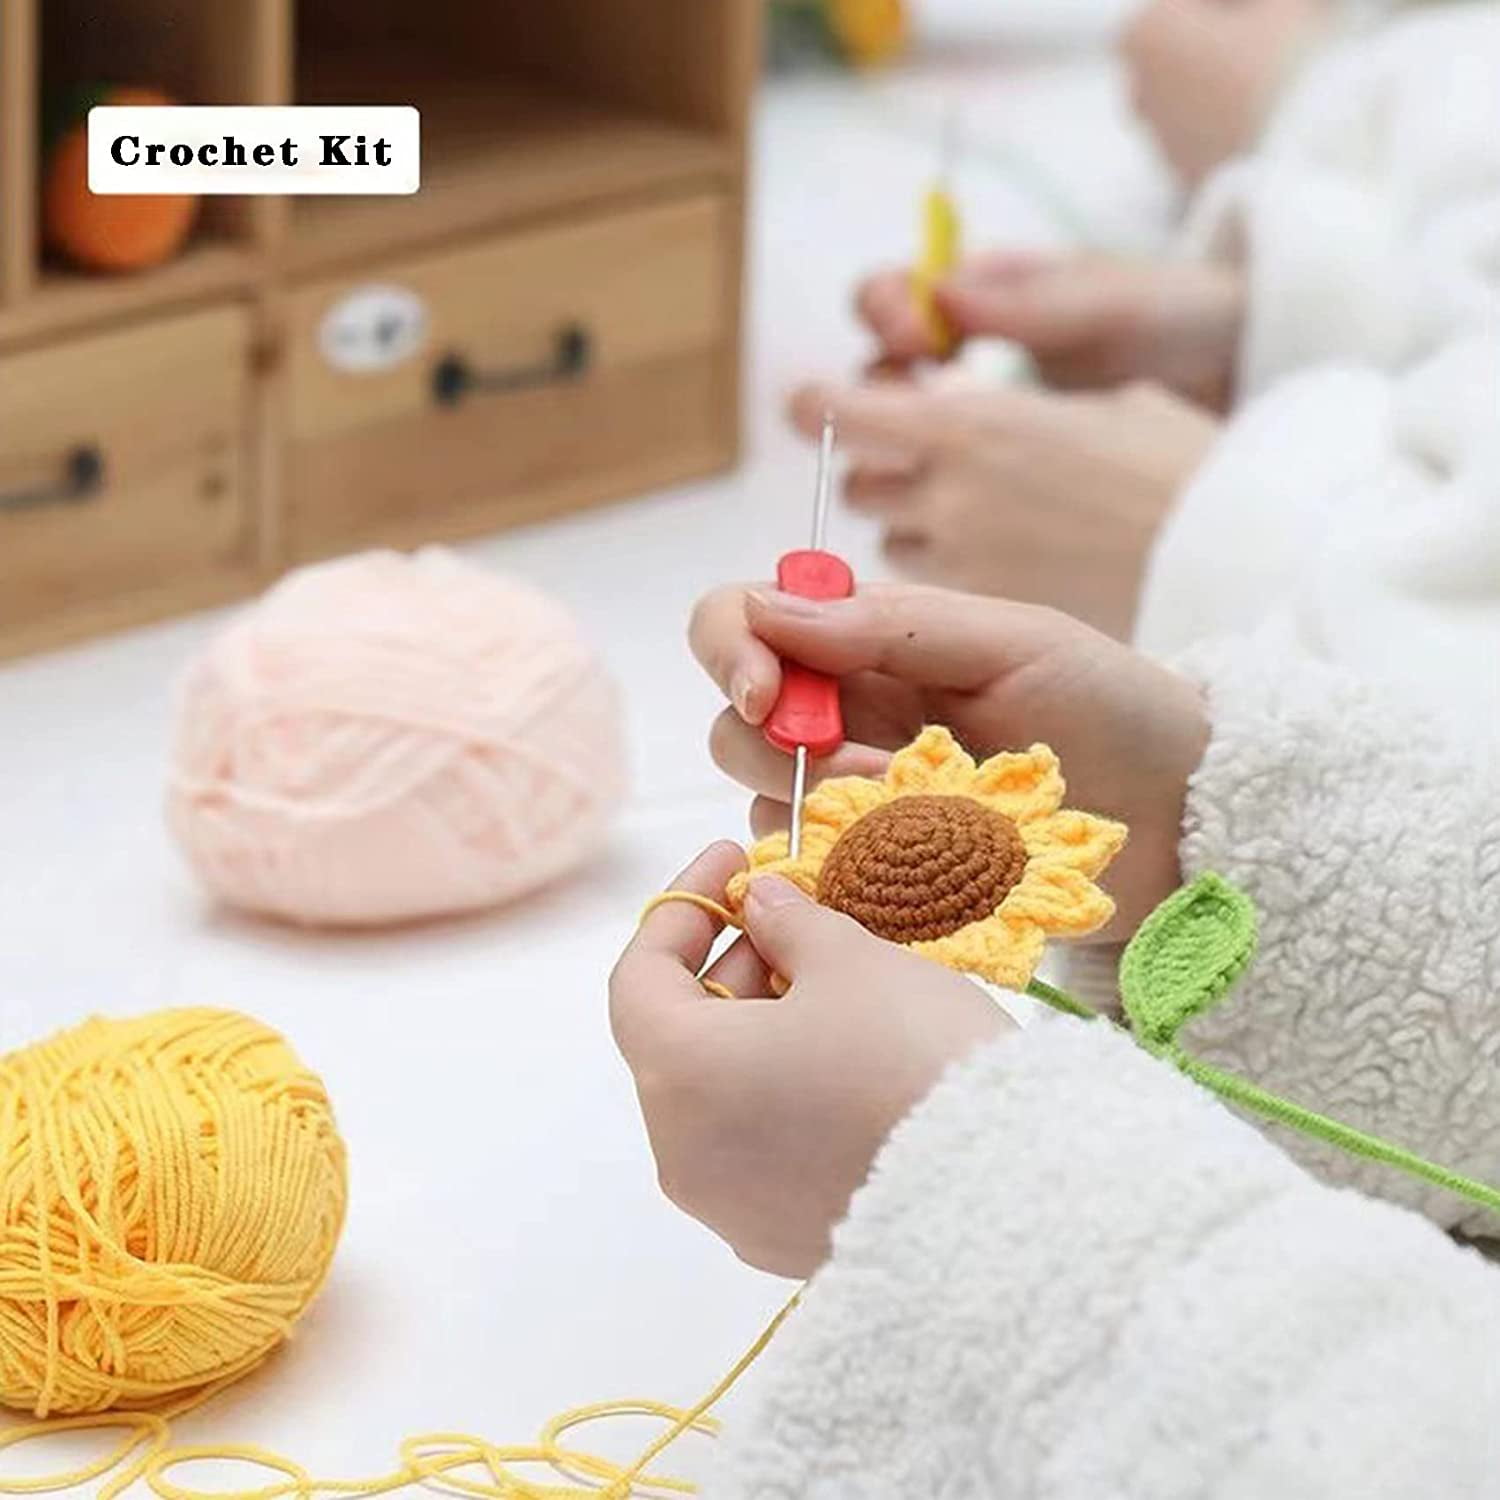  RealPlus 108PCS Crochet Kit for Beginners, 14 Sizes